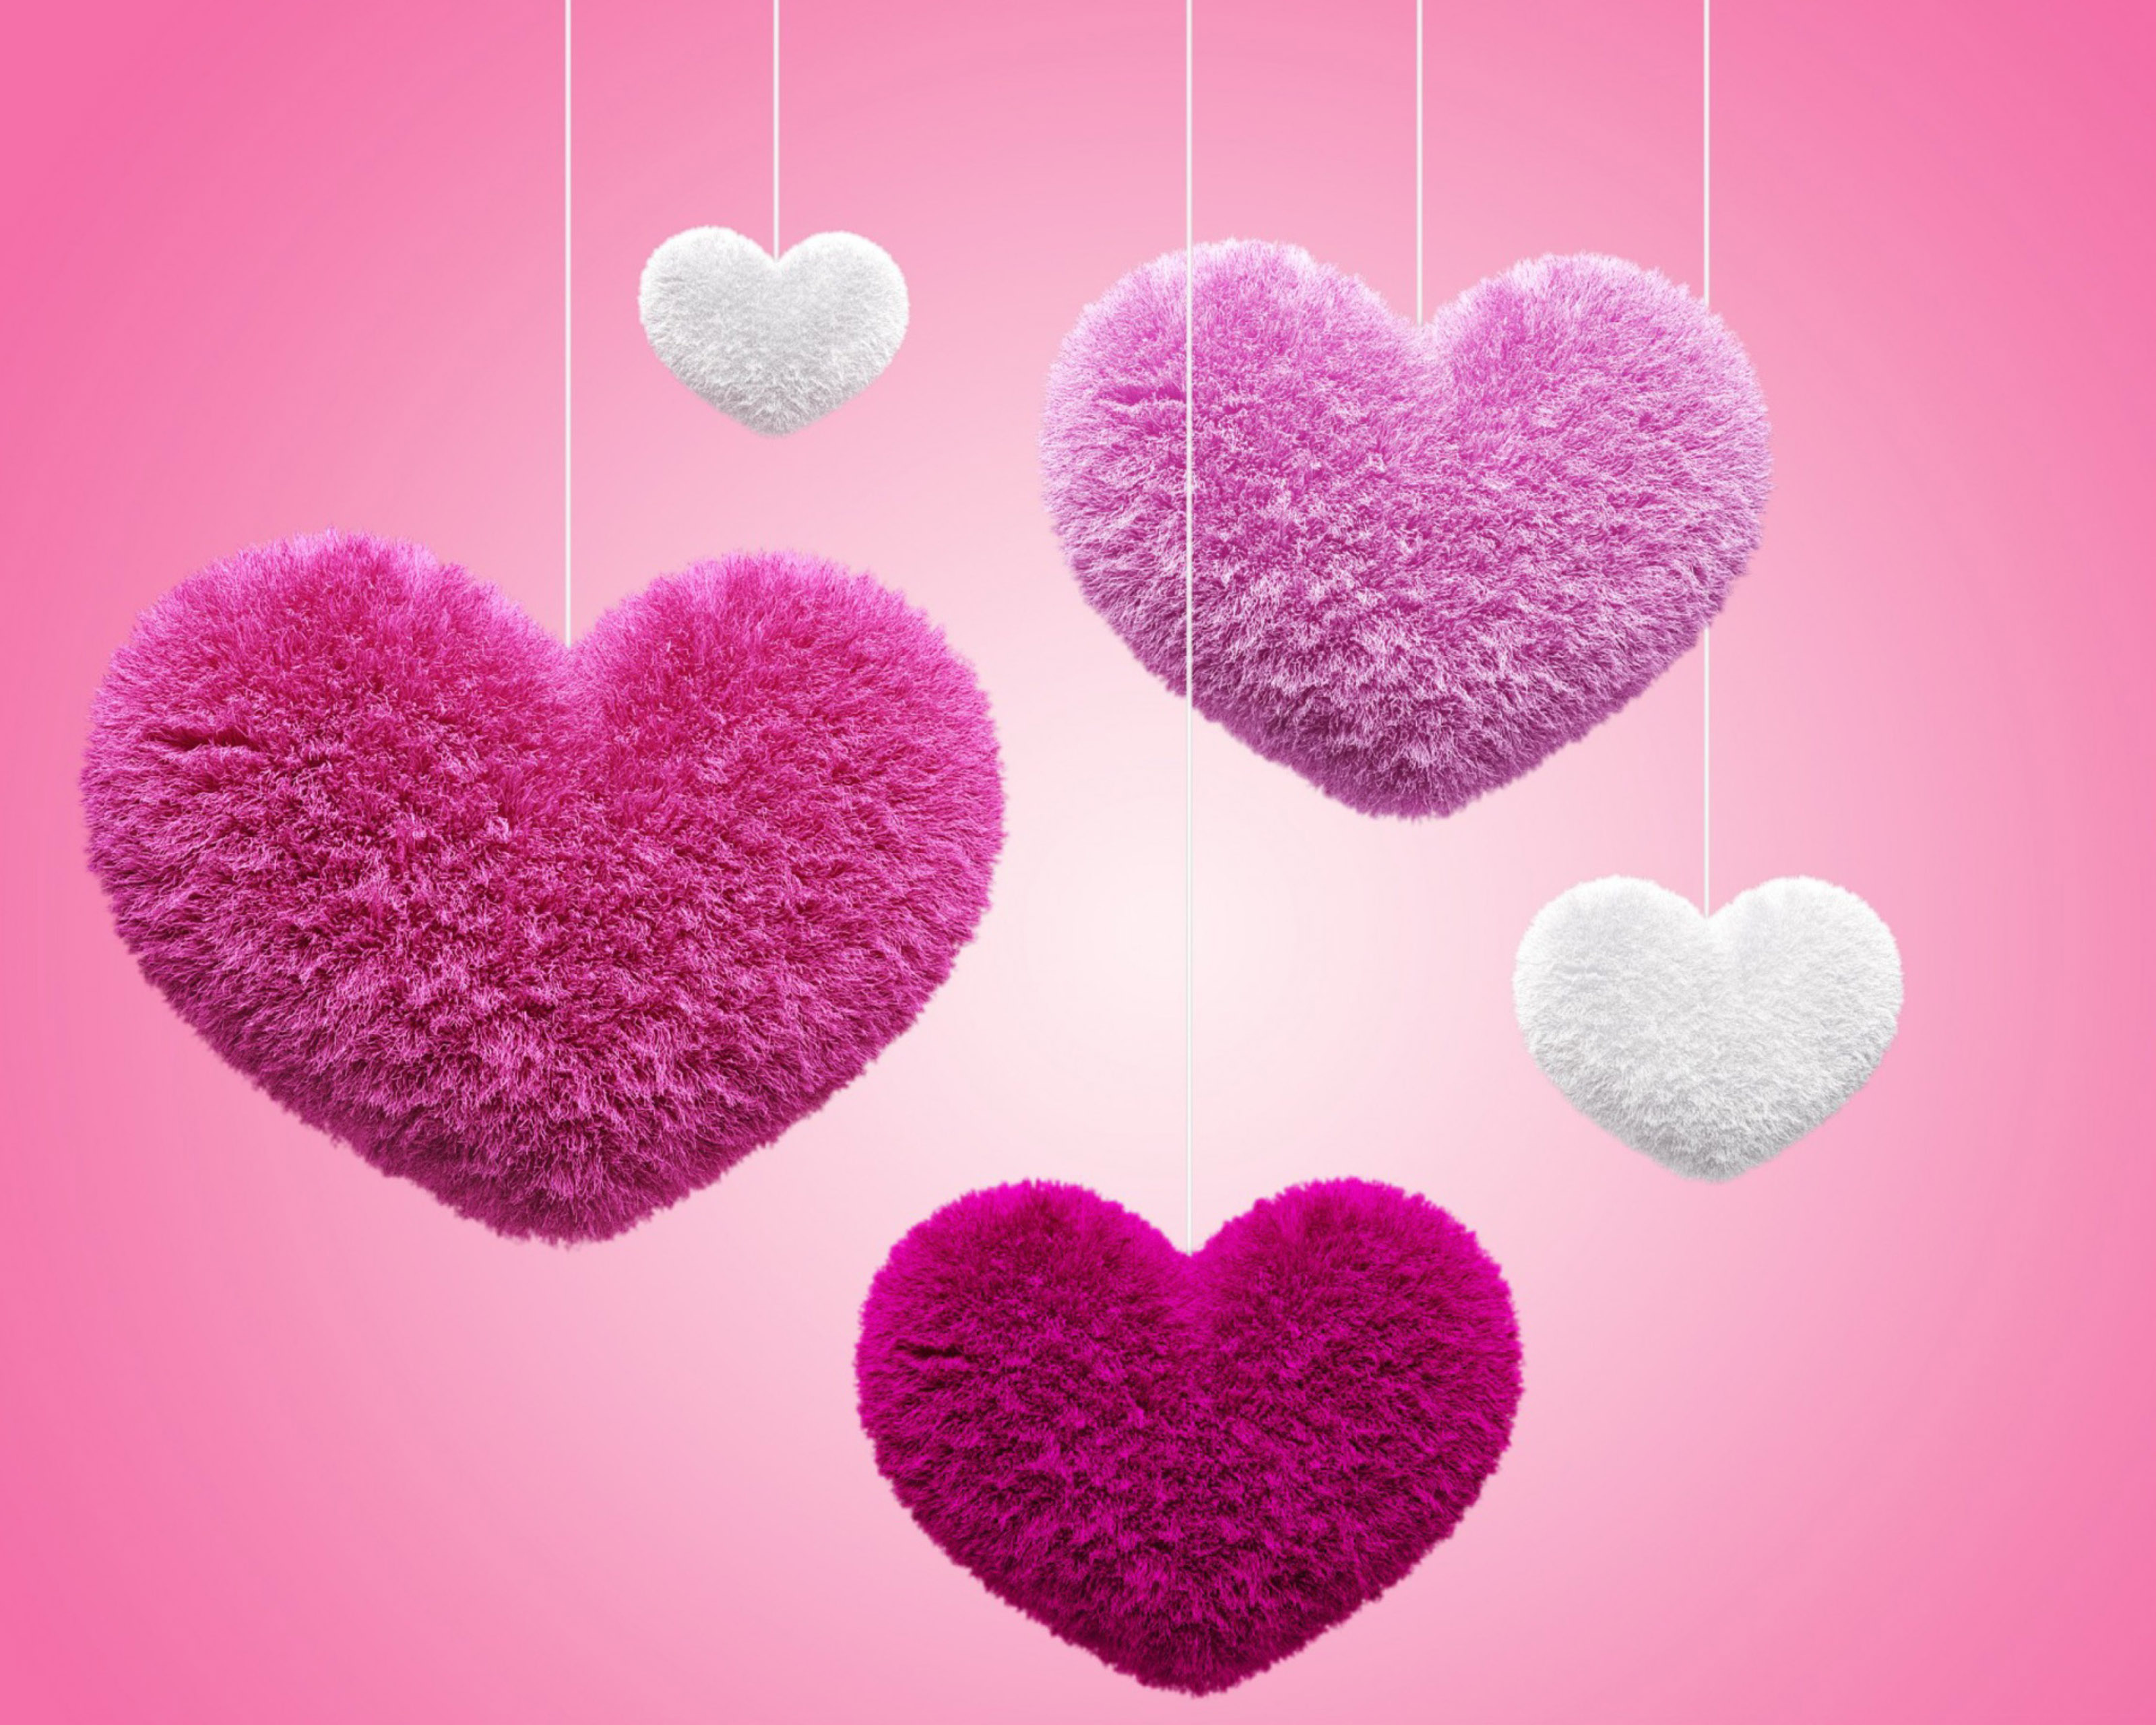 レノボk3ノートのhd壁紙,心臓,ピンク,愛,バレンタイン・デー,心臓